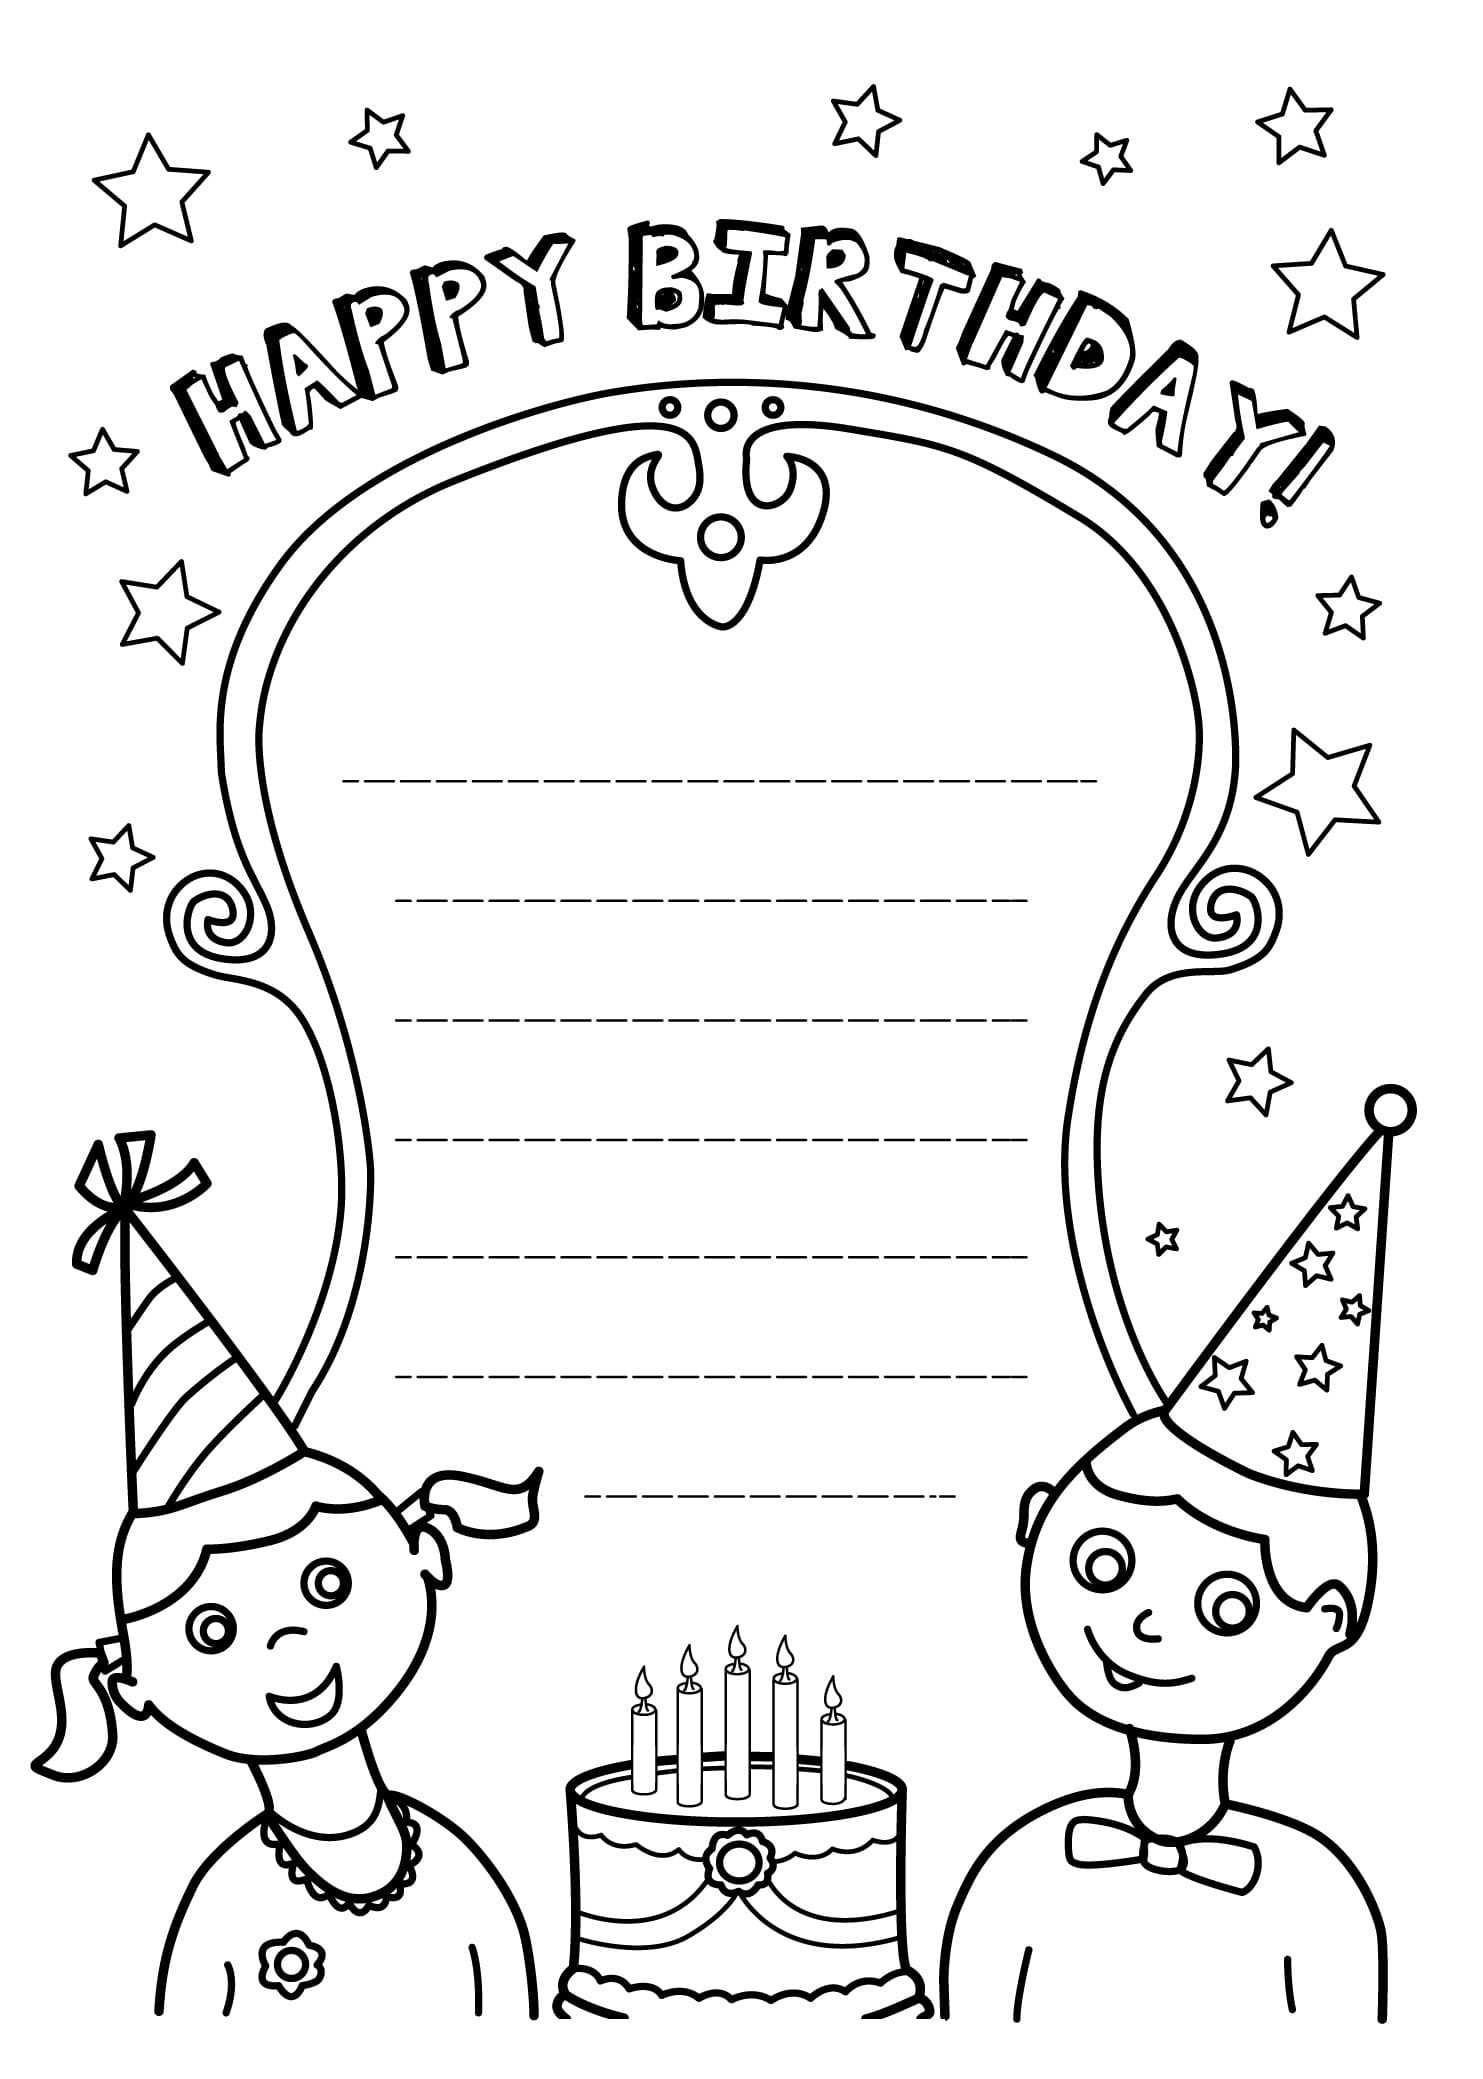 Приглашение на день рождения ребенка: распечатать шаблоны девочке, мальчику, на юбилей, сделать своими руками, текст и раскраски к празднику + картинки